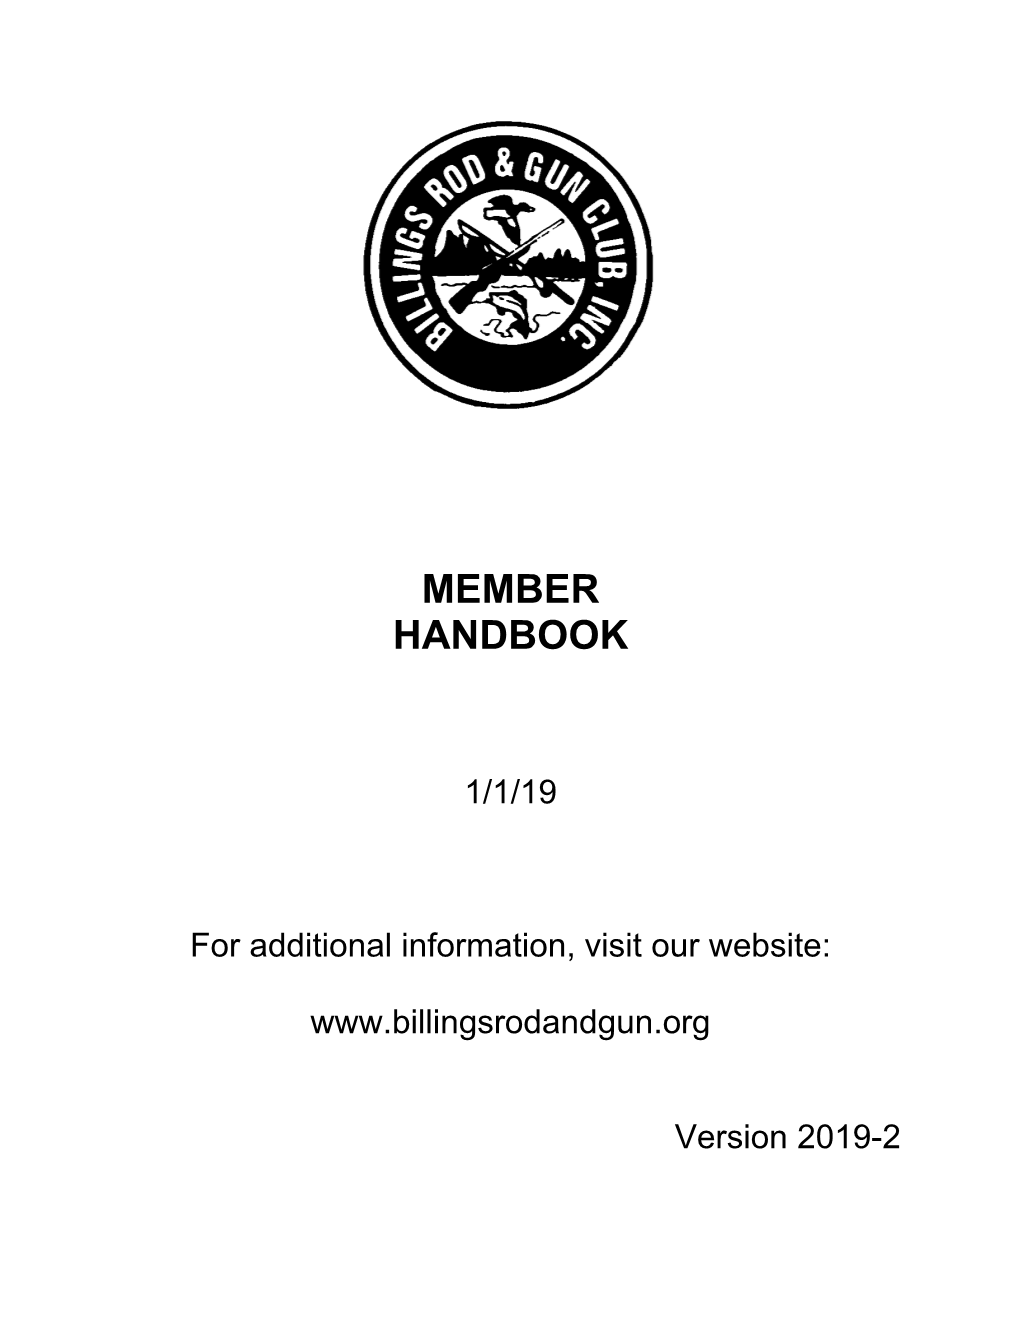 Member Handbook 2019 V2